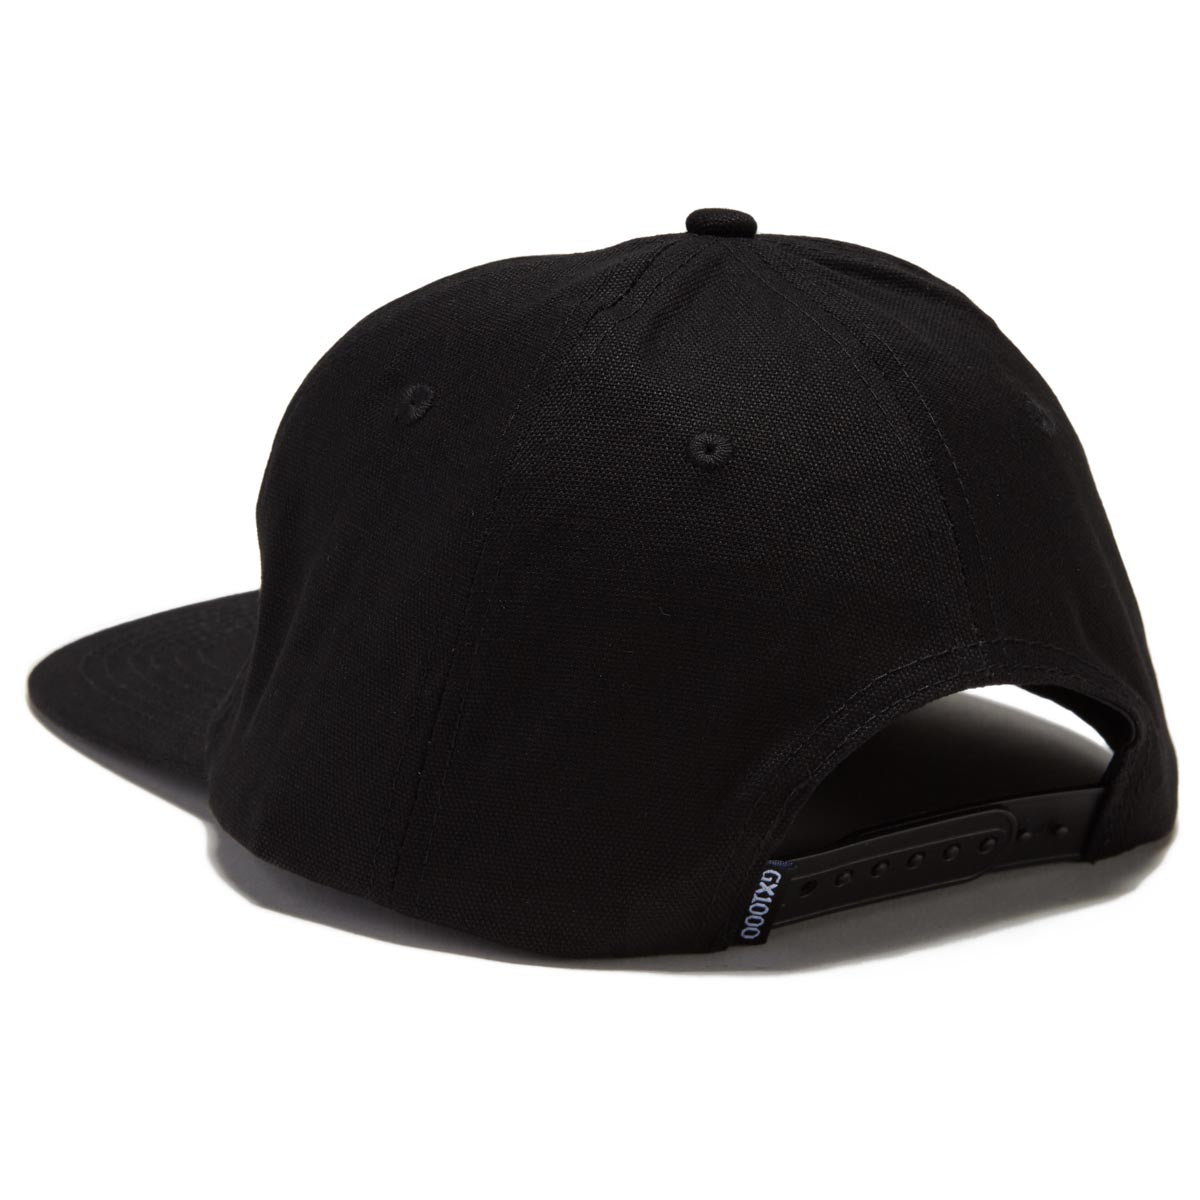 GX1000 SF Hat - Black image 2